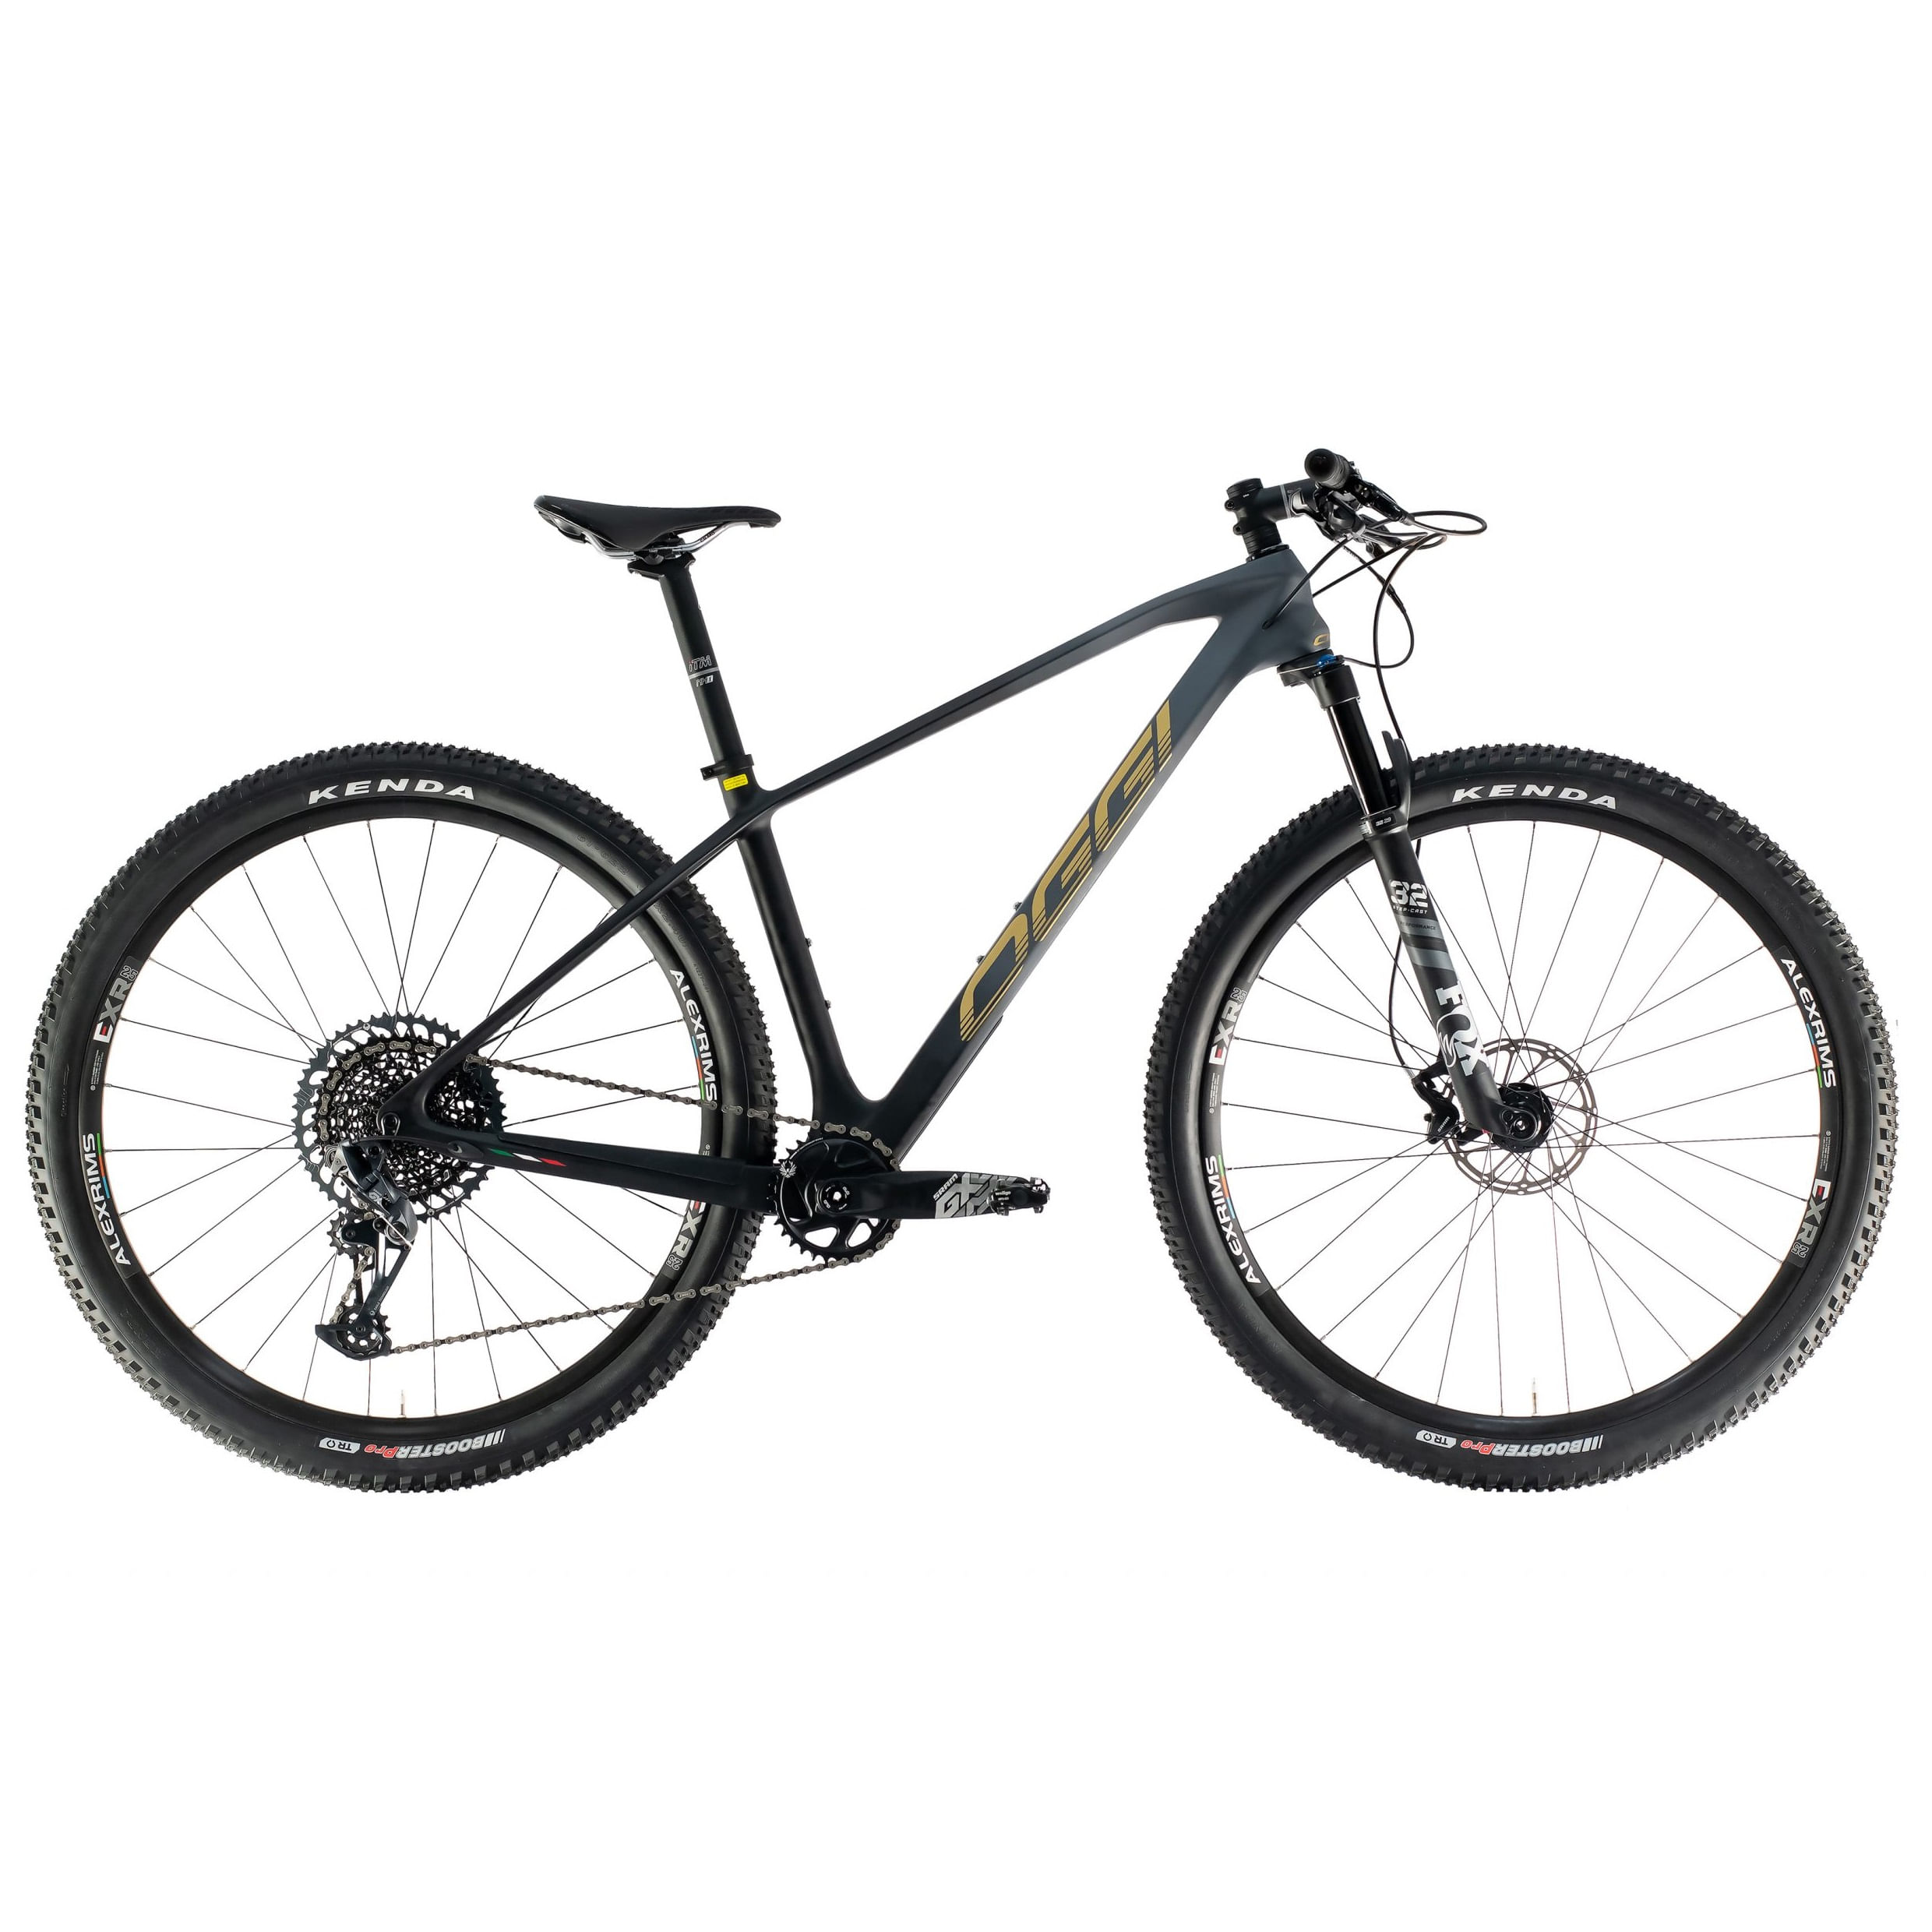 Bike-MTB-Aro-29-Oggi-Agile-Pro-GX-12V-Carbono-Preto-e-Cinza-2021---10183